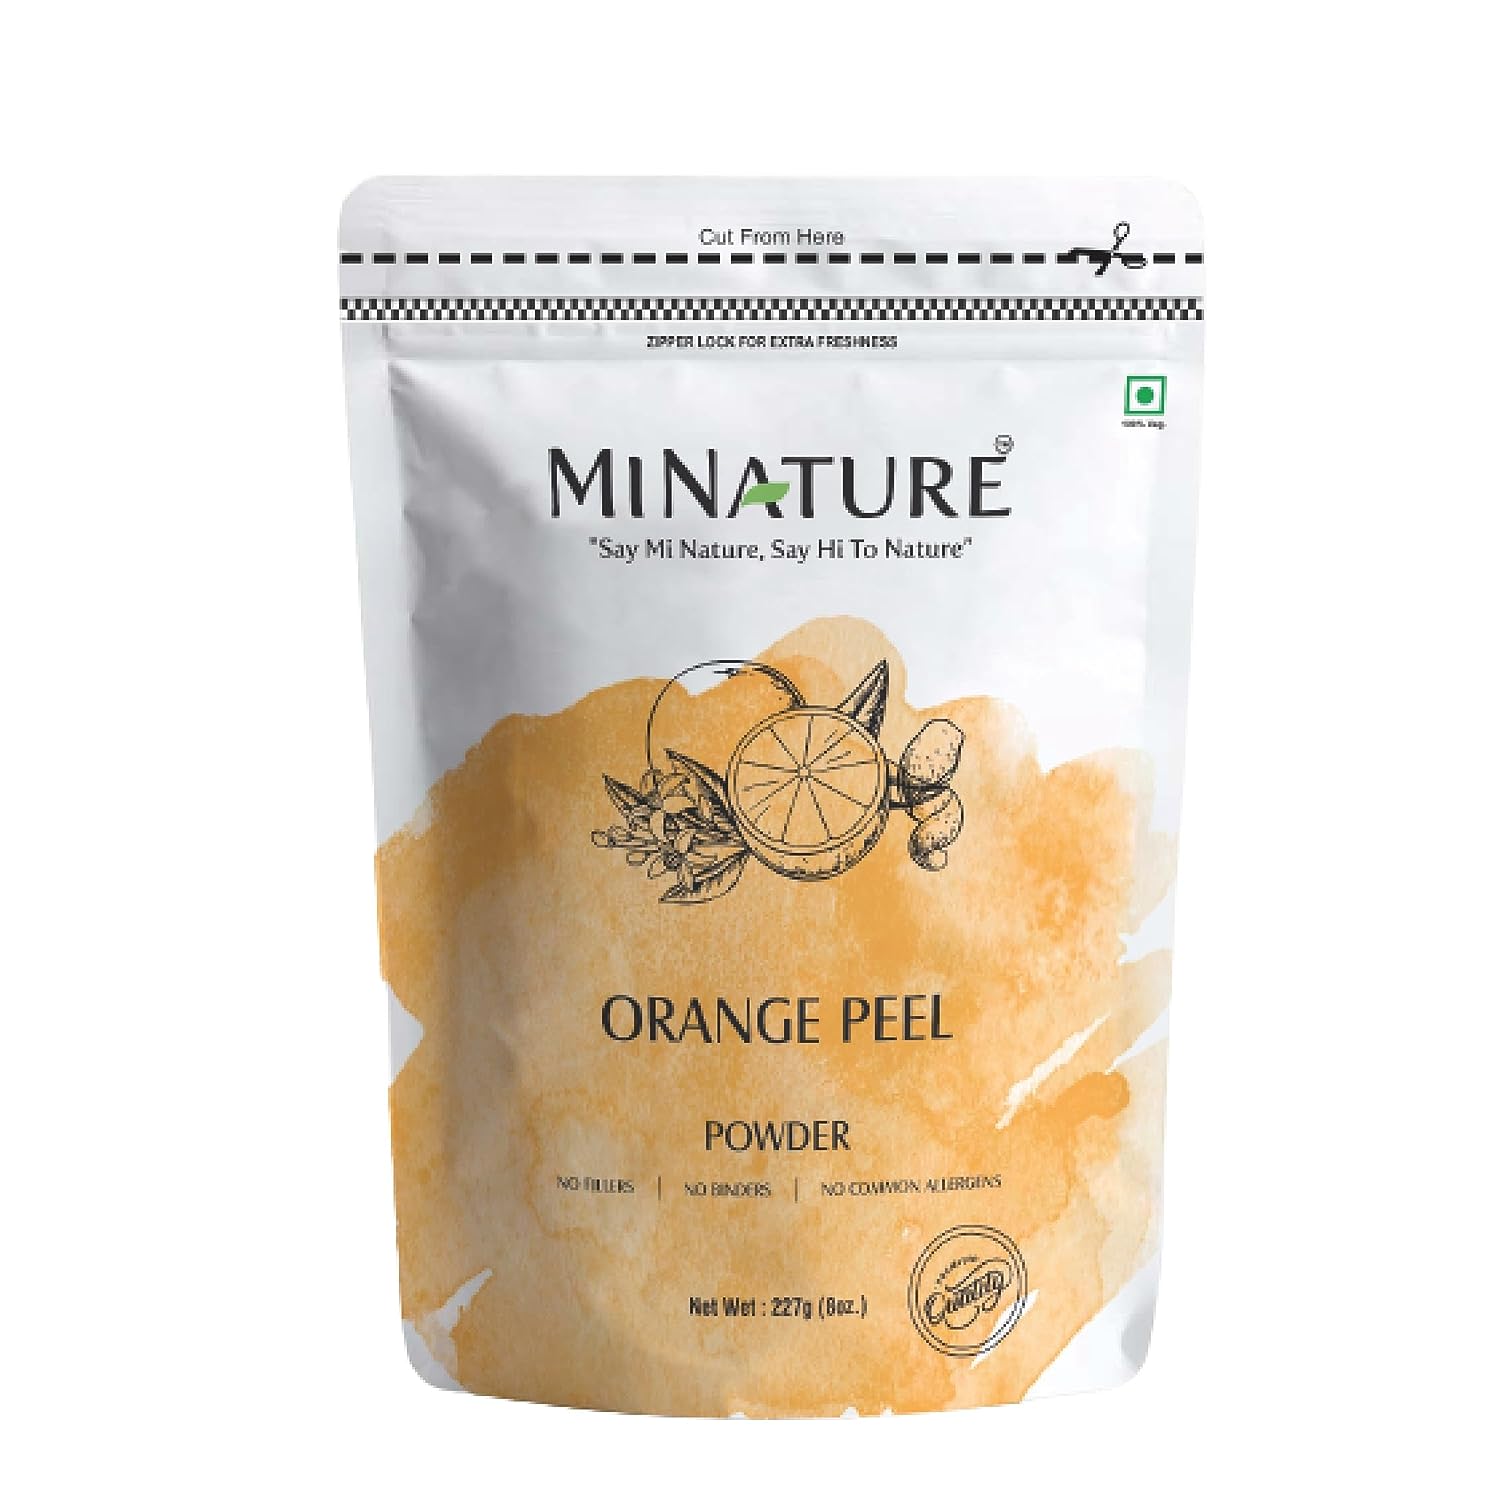 Mi Nature Orange Peel Powder: Pure and Natural Citrus Aurantium Peel, 227g